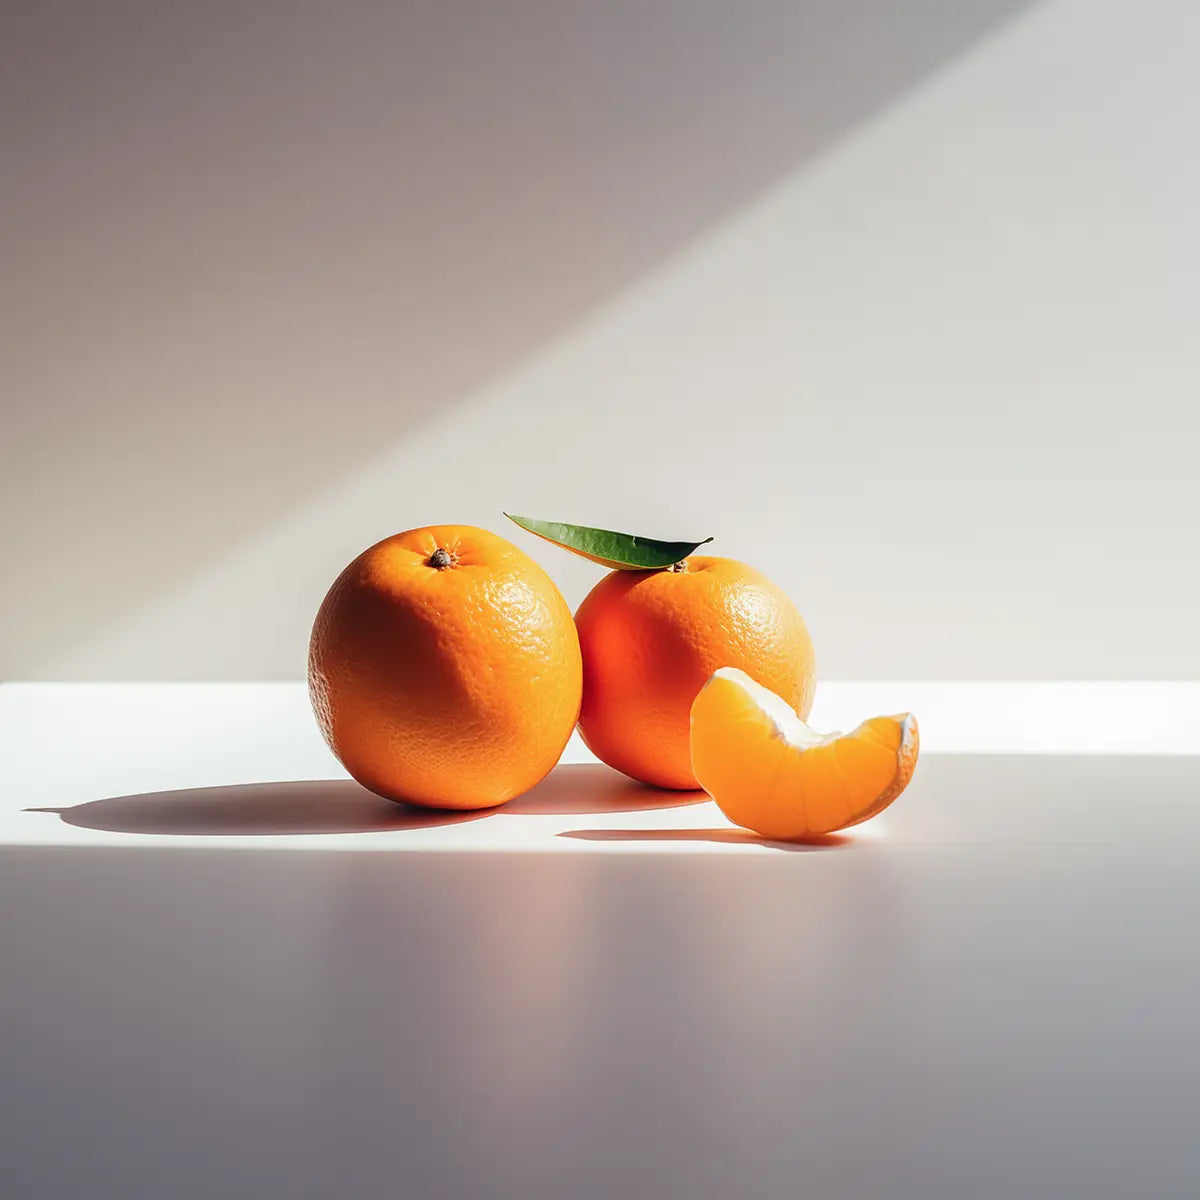 två mandariner och en klyfta mandarin på en vit yta i strålande sol